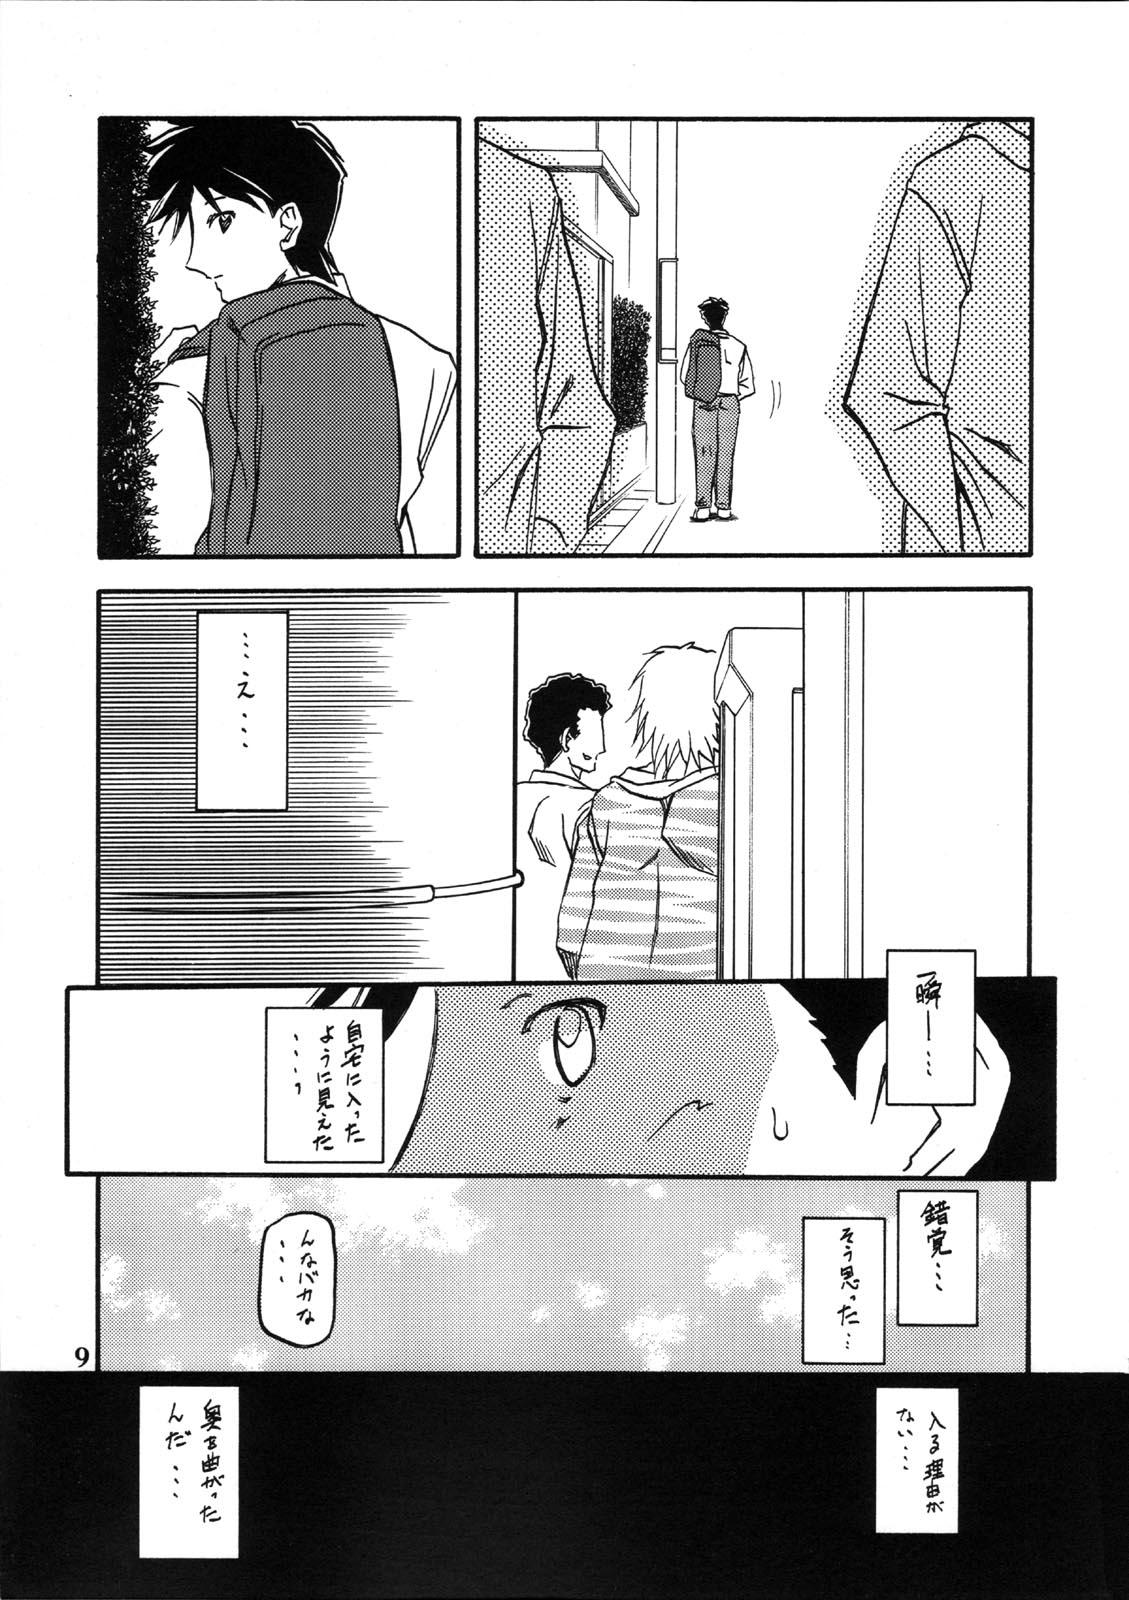 Comendo Akebi no Mi - Miwako - Akebi no mi Cum In Pussy - Page 9